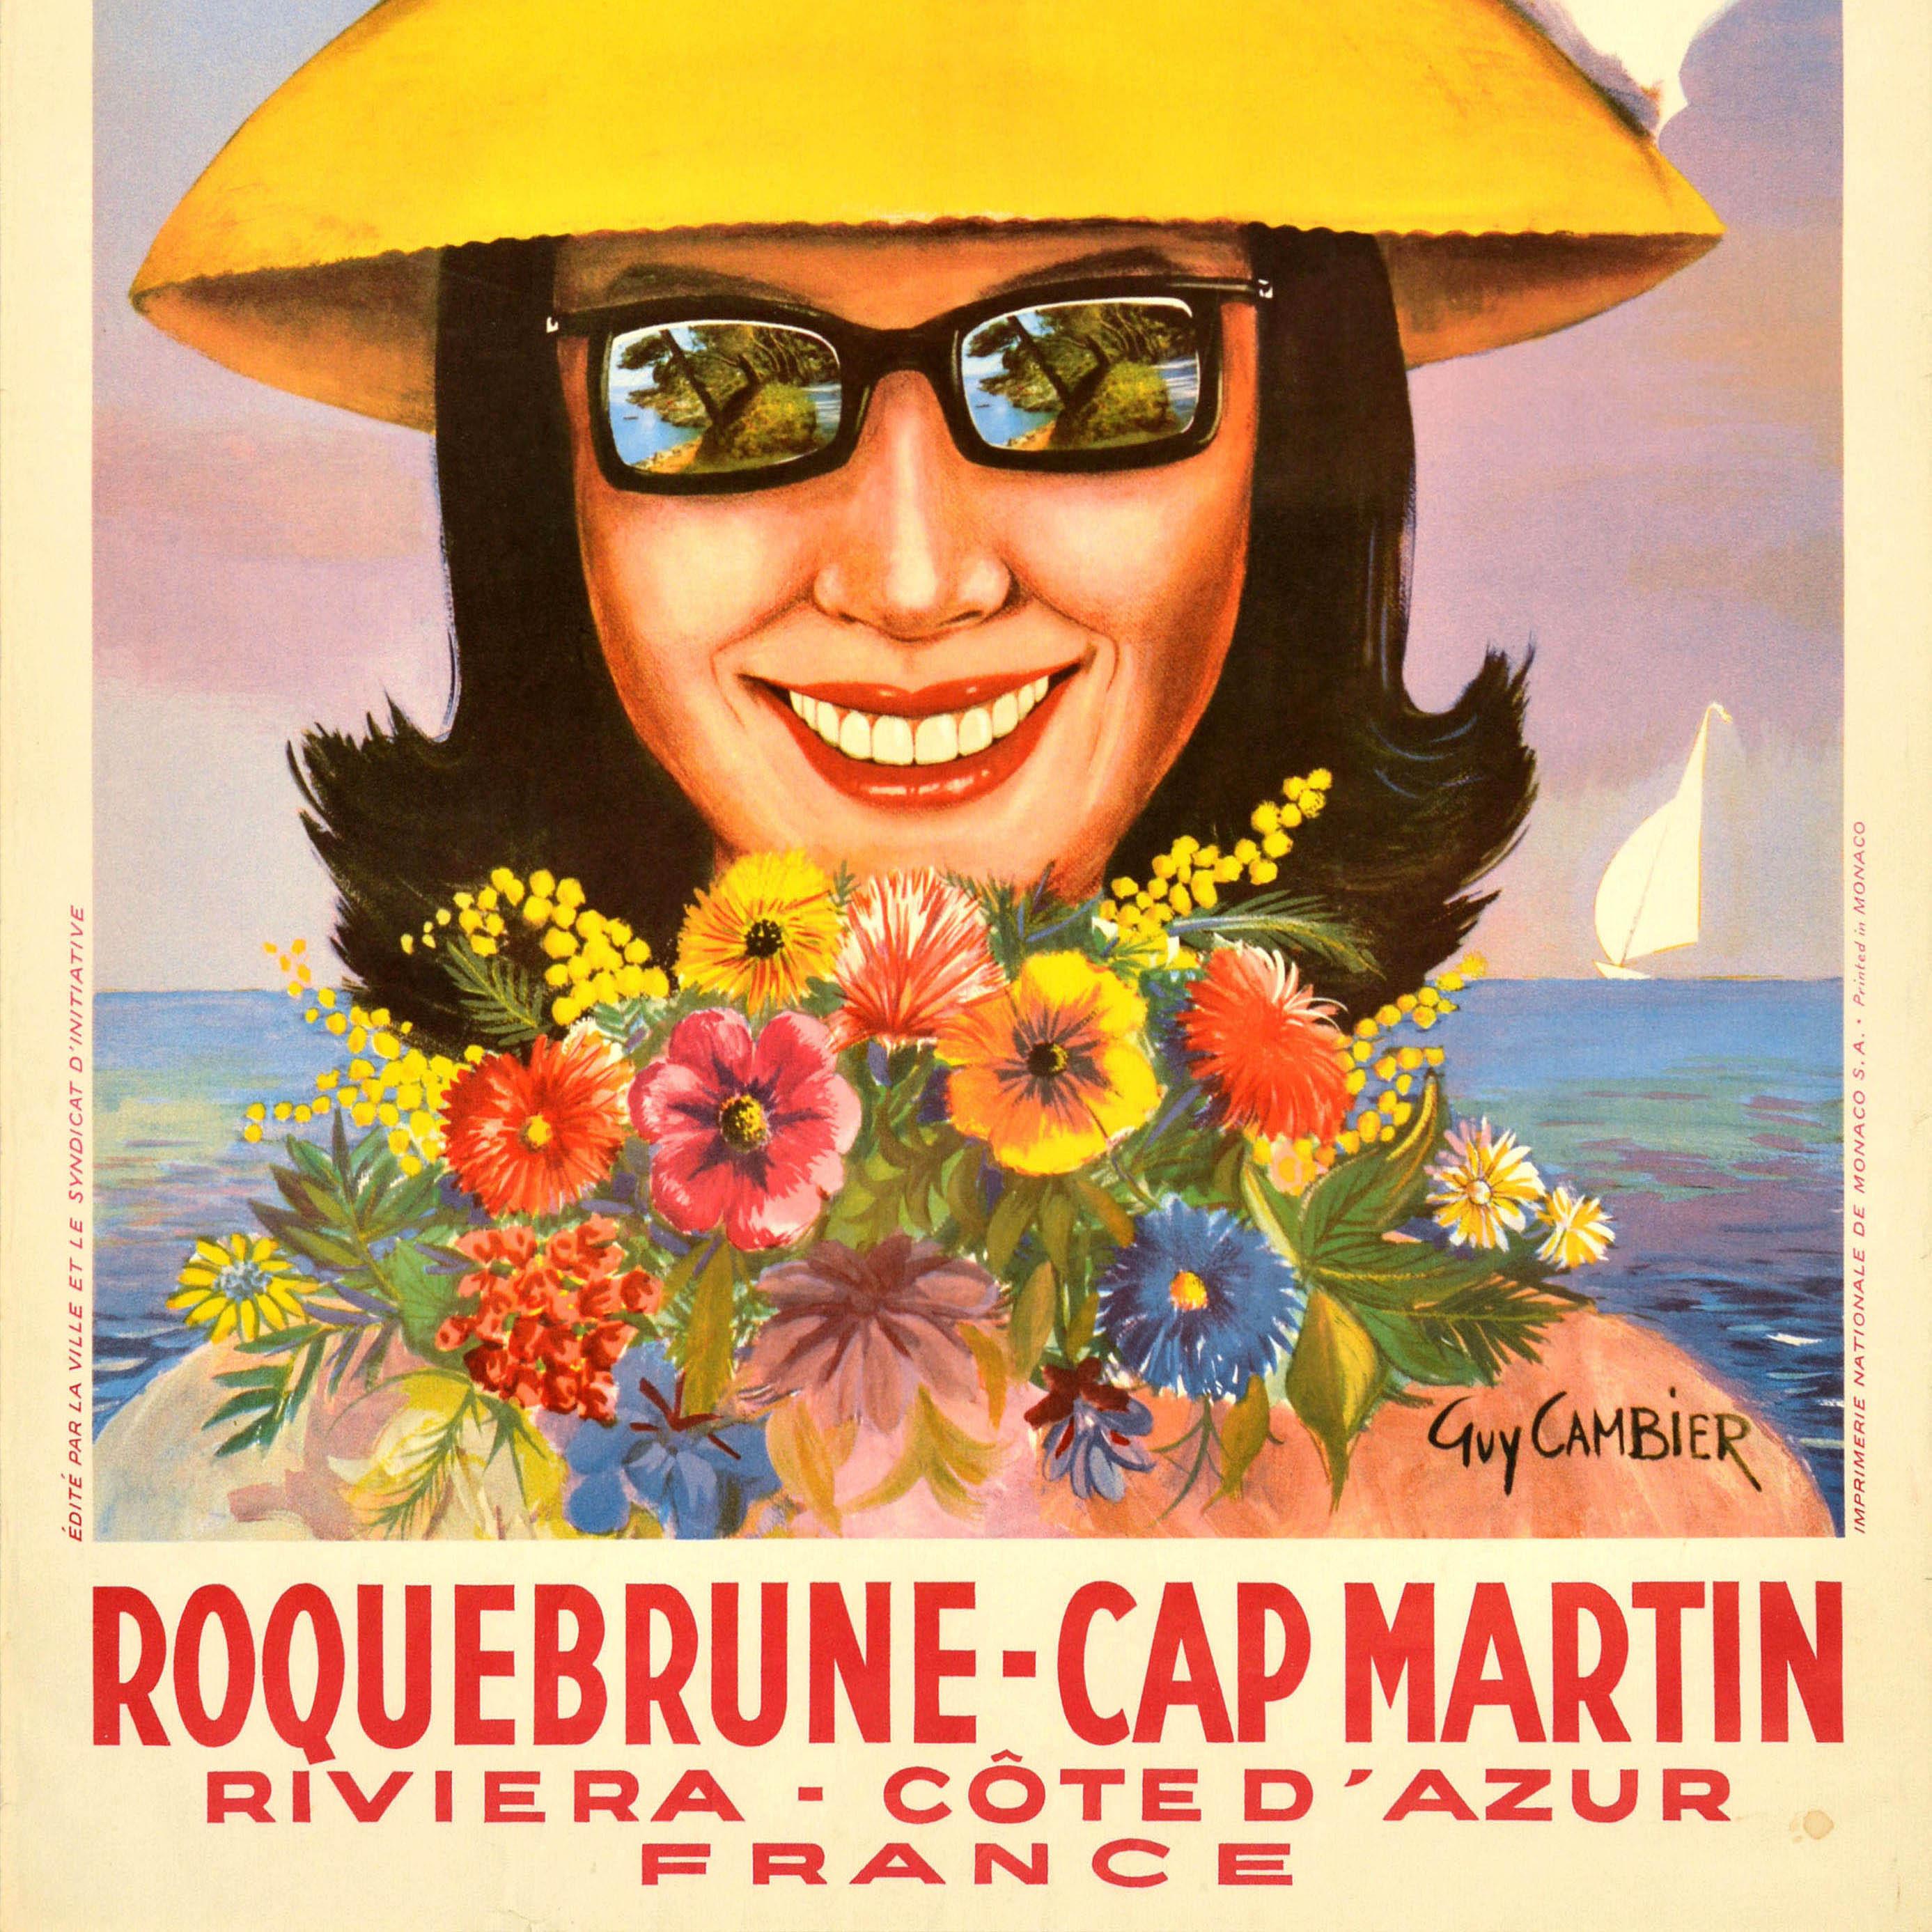 Original Vintage-Reiseplakat für Roquebrune Cap Martin Riviera Cote d'Azur Frankreich mit einer farbenfrohen Illustration einer lächelnden Dame mit einem Sommerhut, um den eine rot-weiß-blaue französische Flagge gebunden ist, und einer